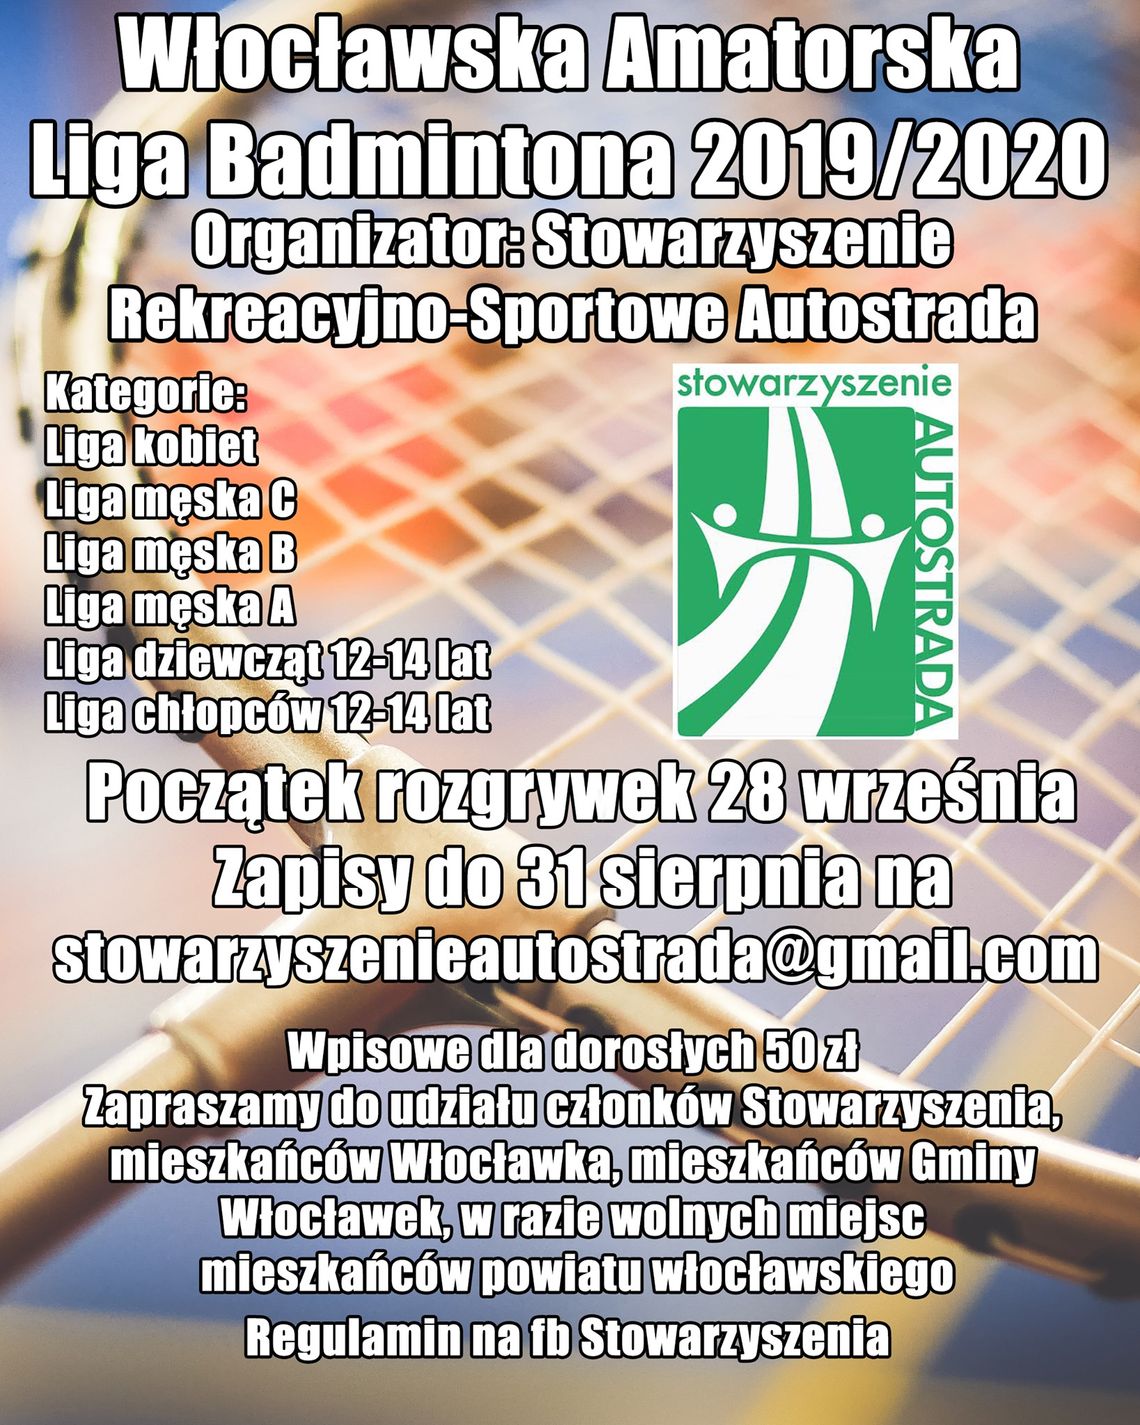 Stowarzyszenie Autostrada zaprasza do Włocławskiej Amatorskiej Ligi Badmintona